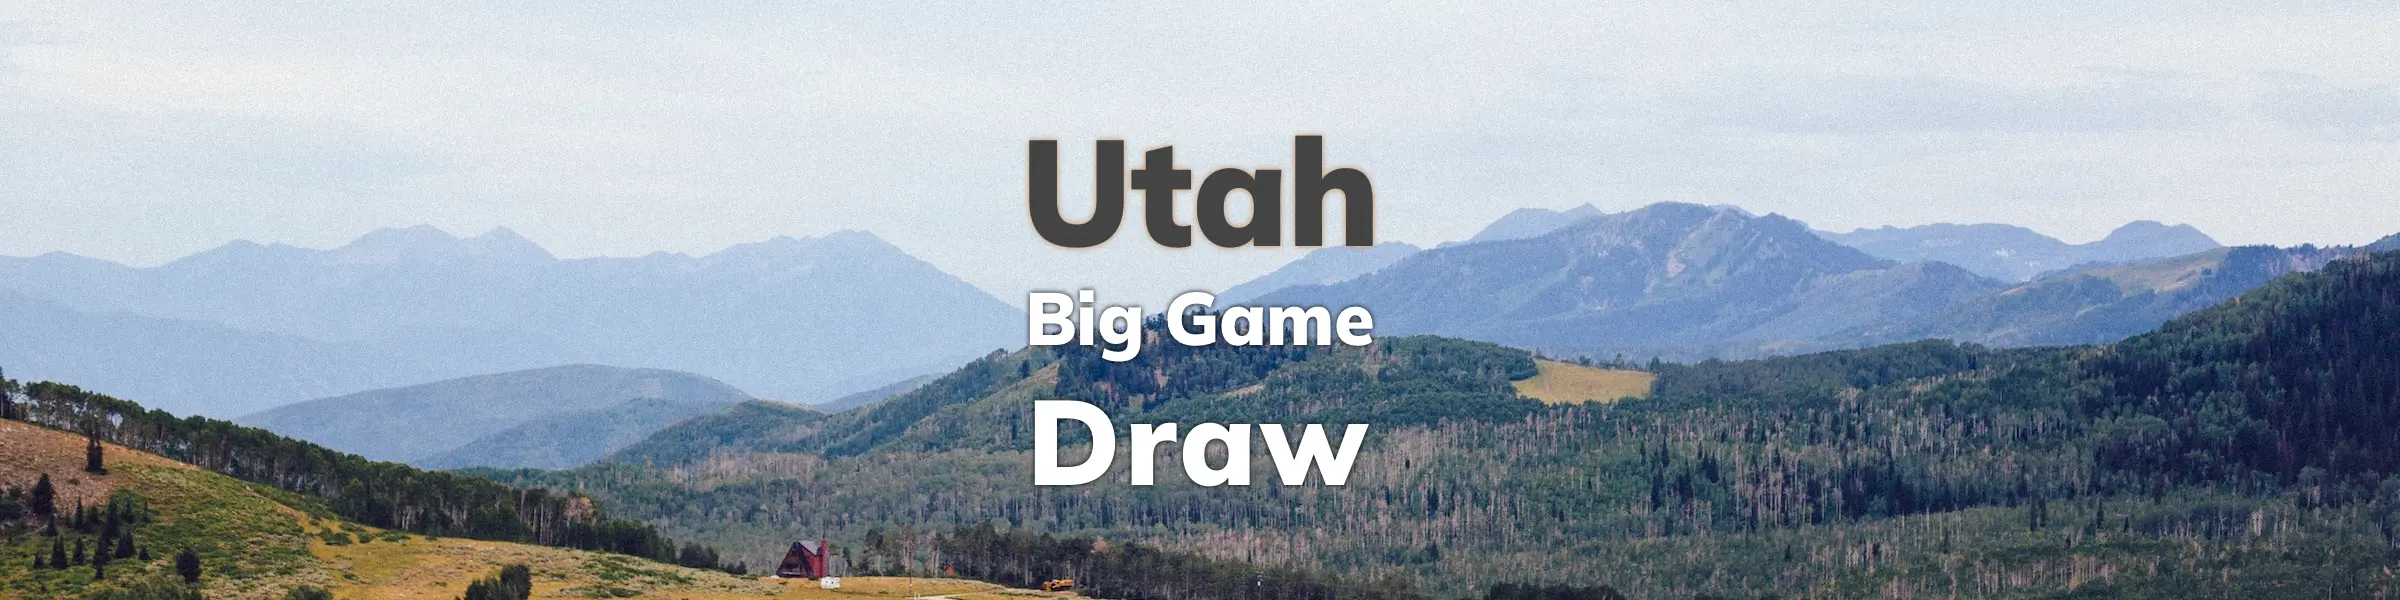 Utah Big Game Draw